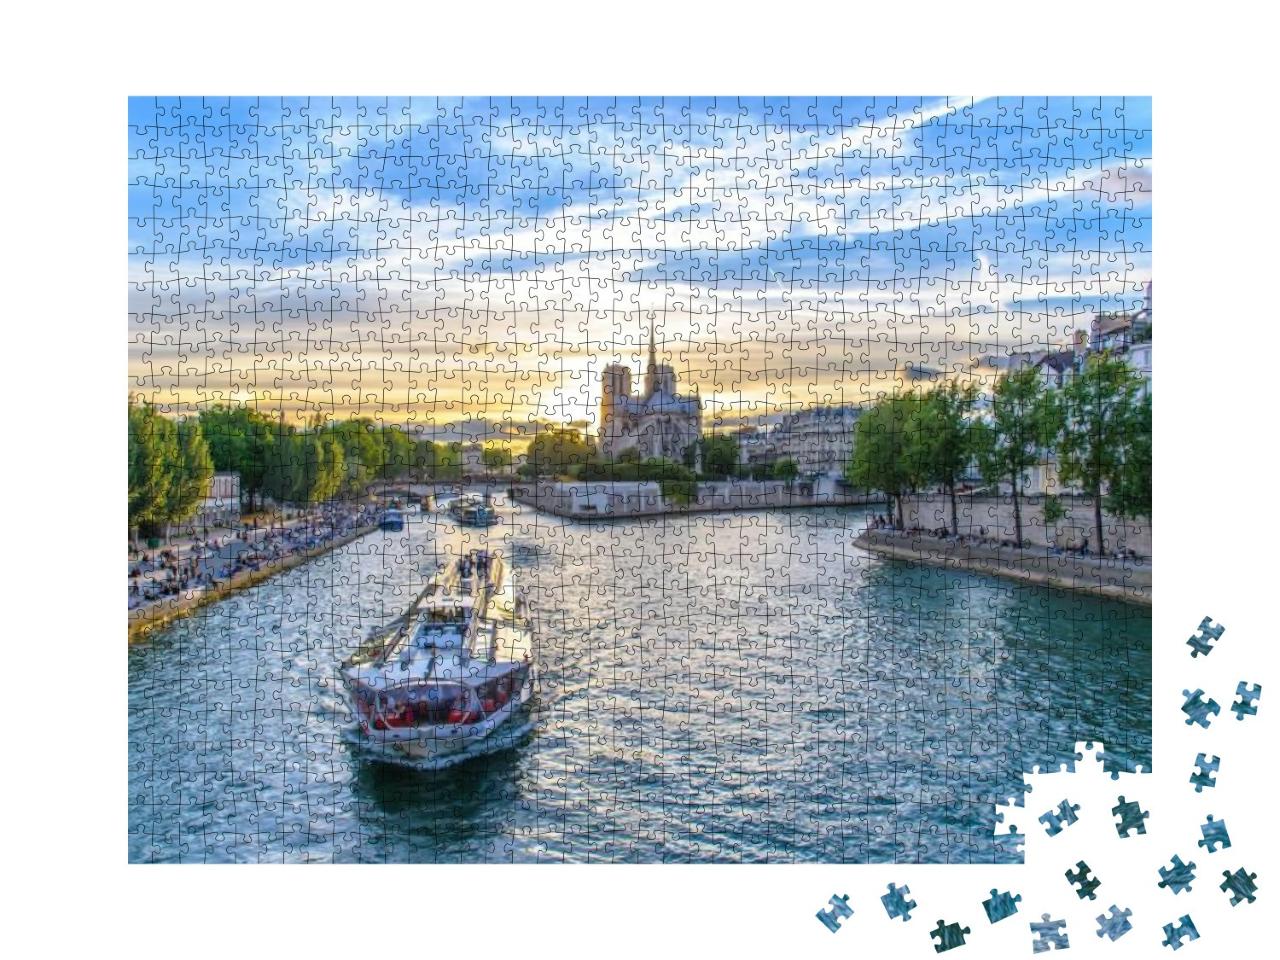 Notre Dame De Paris Cathedral & Seine River... Jigsaw Puzzle with 1000 pieces